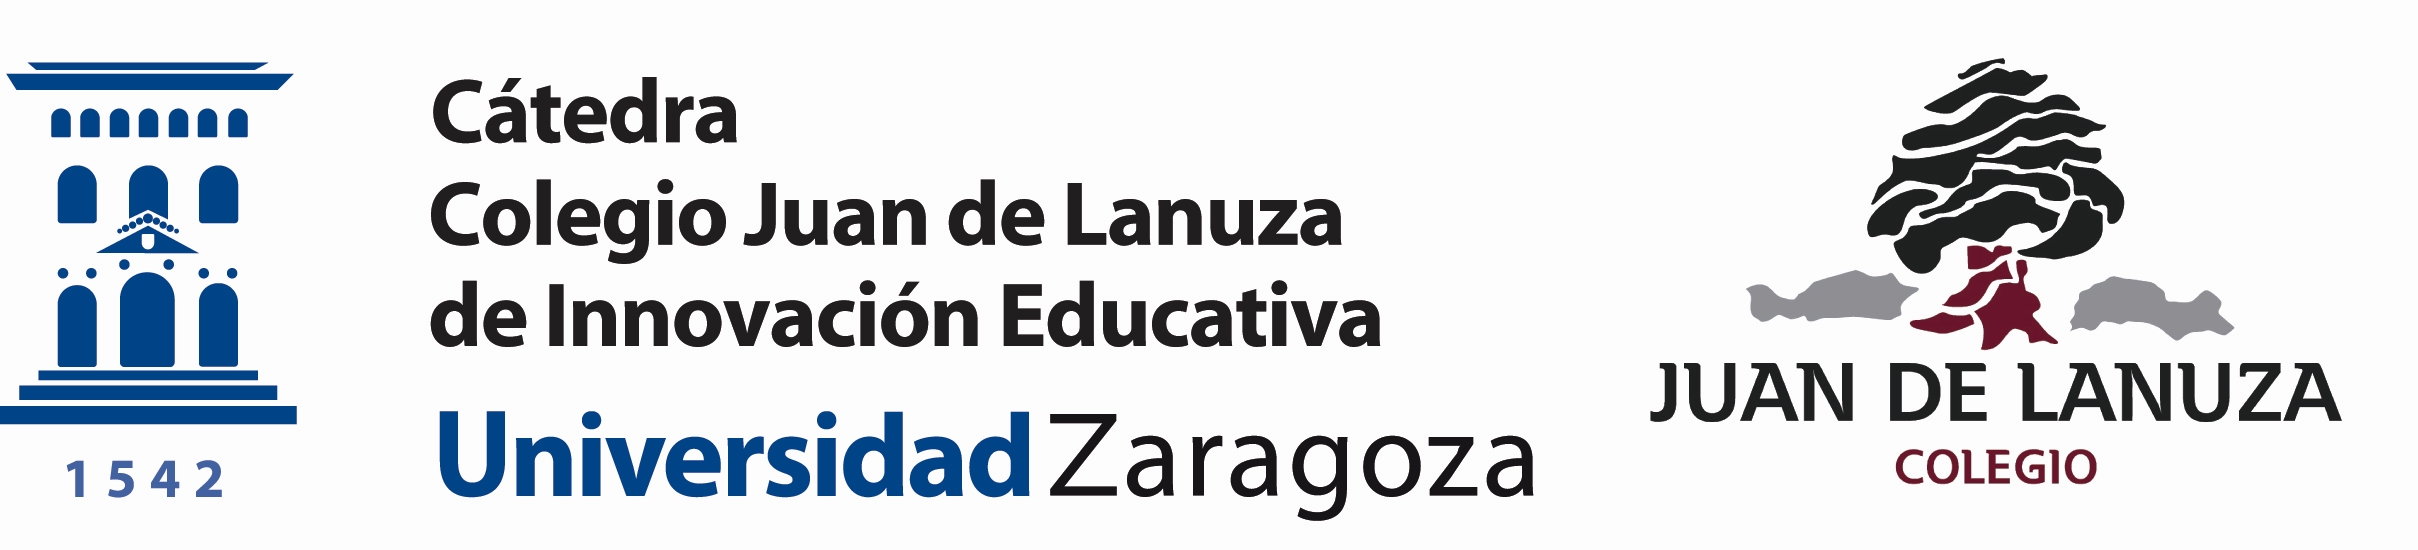 Cátedra Juan de Lanuza de innovación educativa